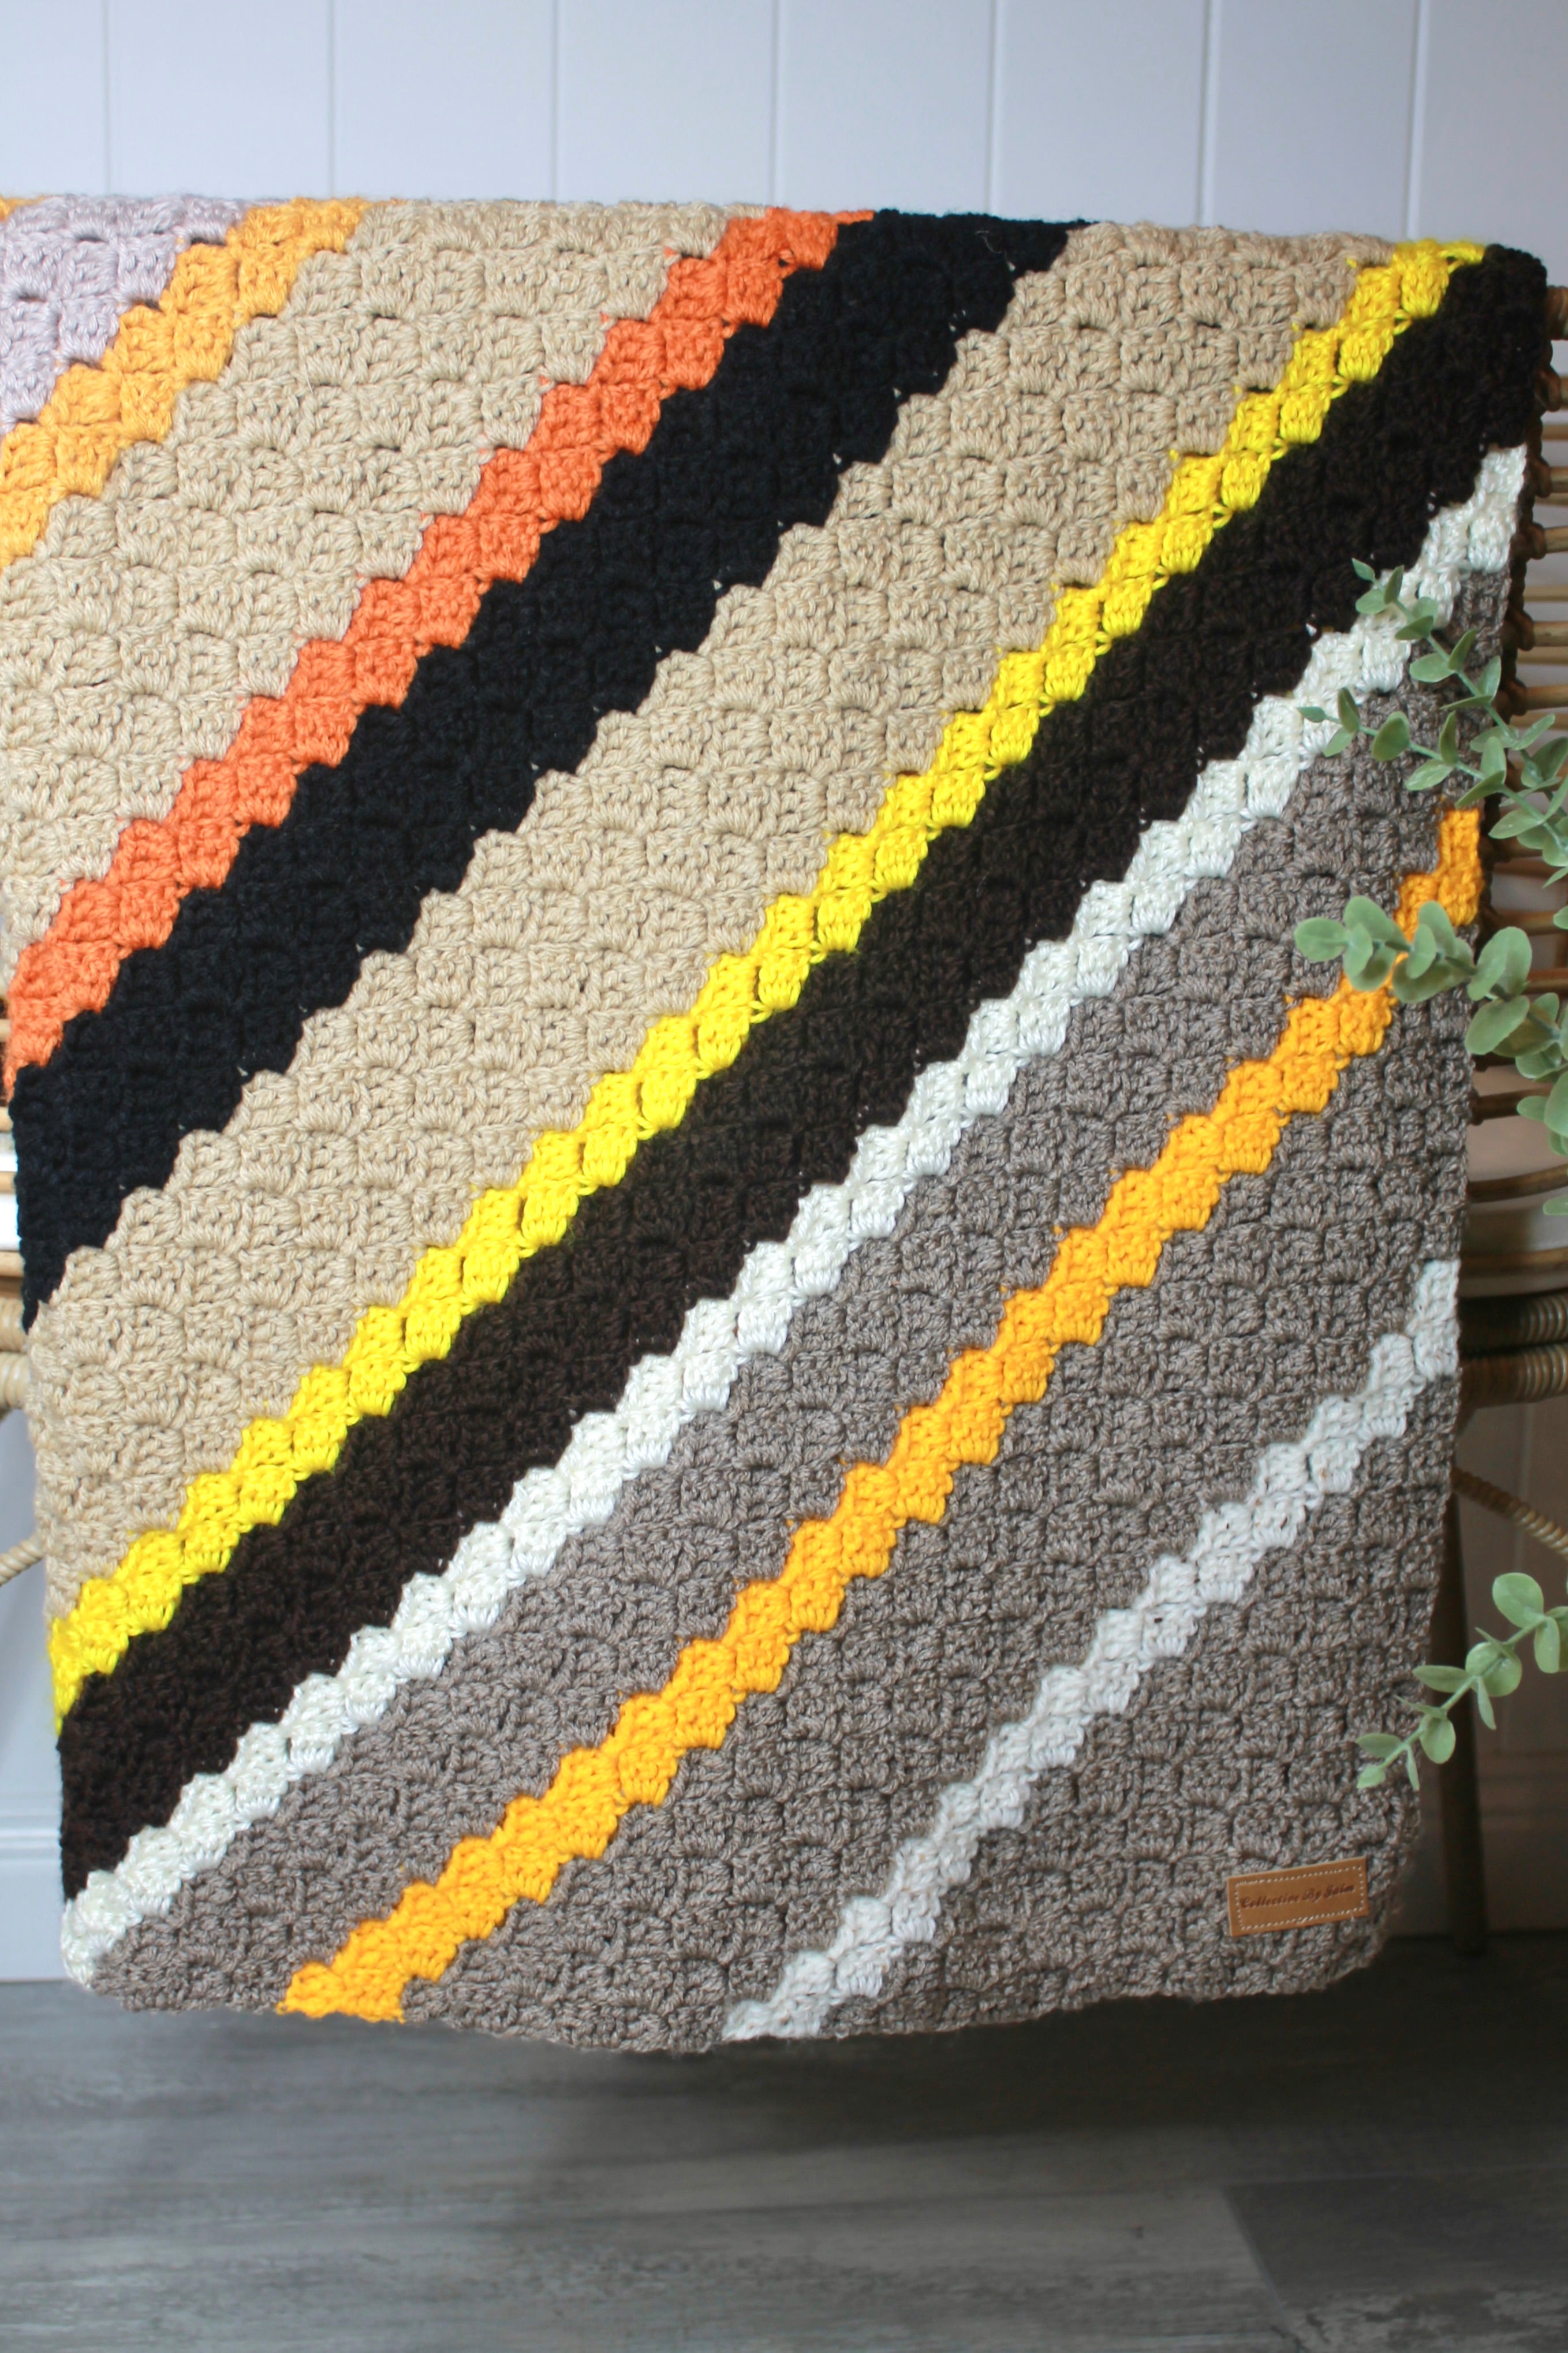 Shayne Hand-Crocheted Blanket